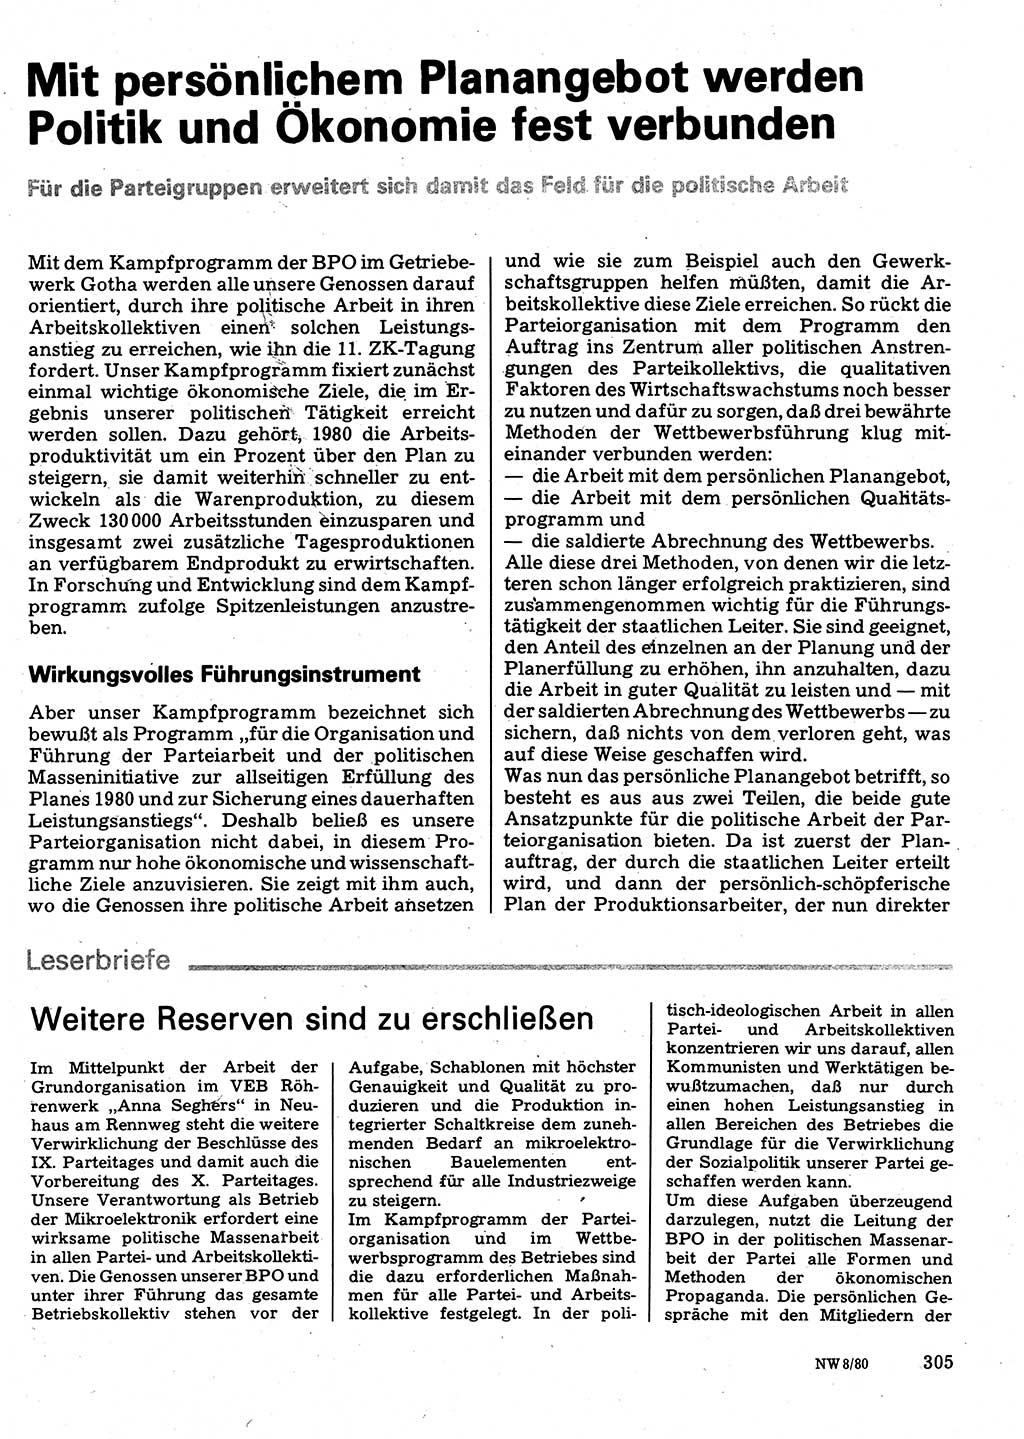 Neuer Weg (NW), Organ des Zentralkomitees (ZK) der SED (Sozialistische Einheitspartei Deutschlands) für Fragen des Parteilebens, 35. Jahrgang [Deutsche Demokratische Republik (DDR)] 1980, Seite 305 (NW ZK SED DDR 1980, S. 305)